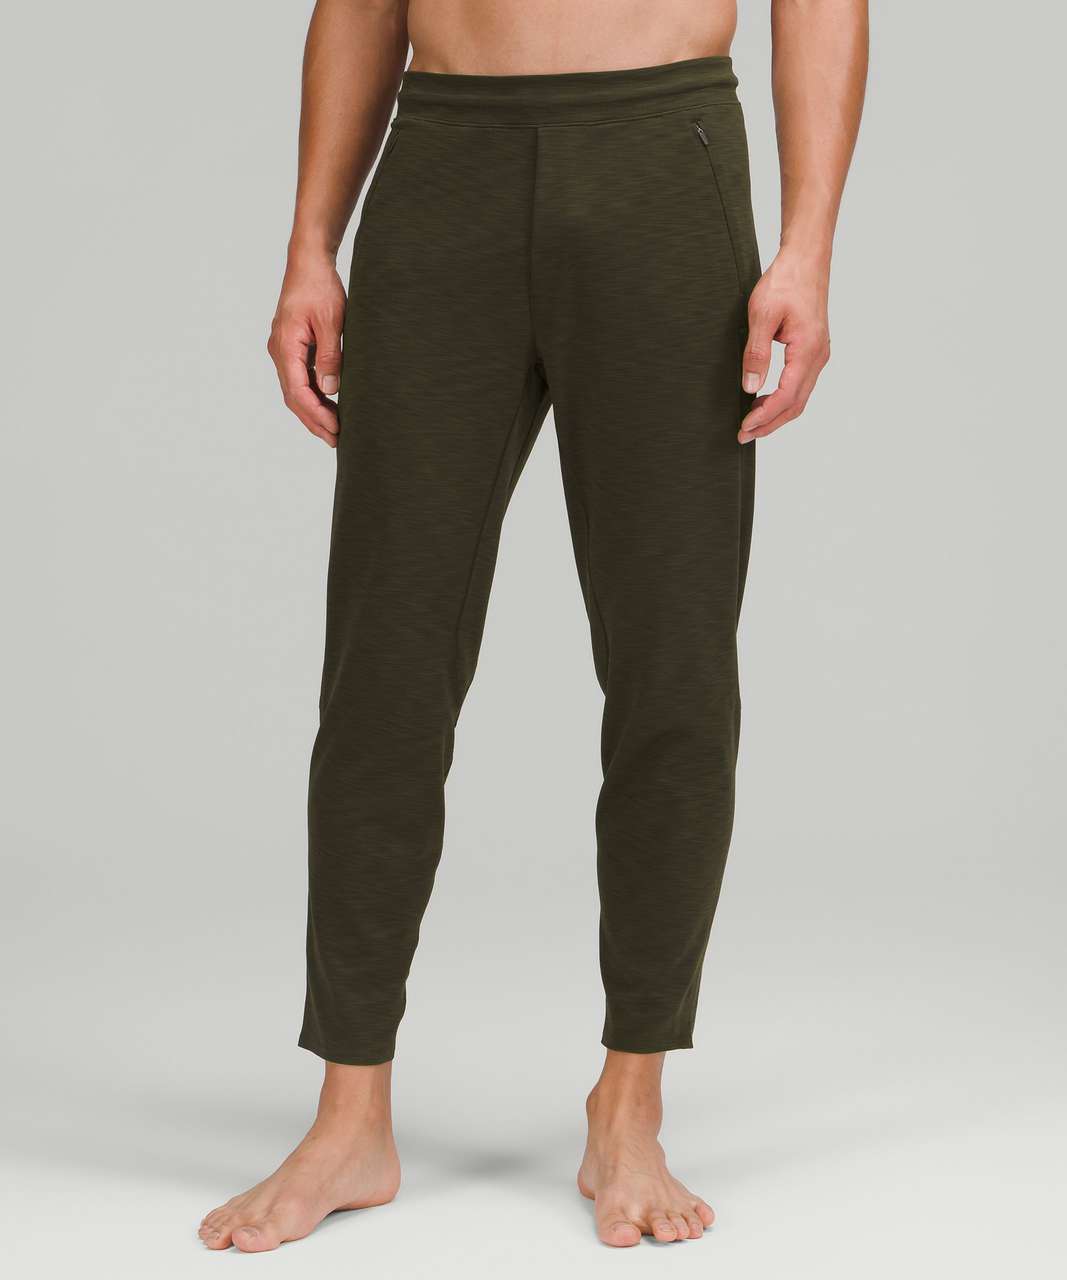 jsaierl Men's Cotton Linen Baggy Pants Casual Solid Color Wide Leg Harem  Hippie Pants Drawstring Loose Fit Yoga Trousers - Walmart.com